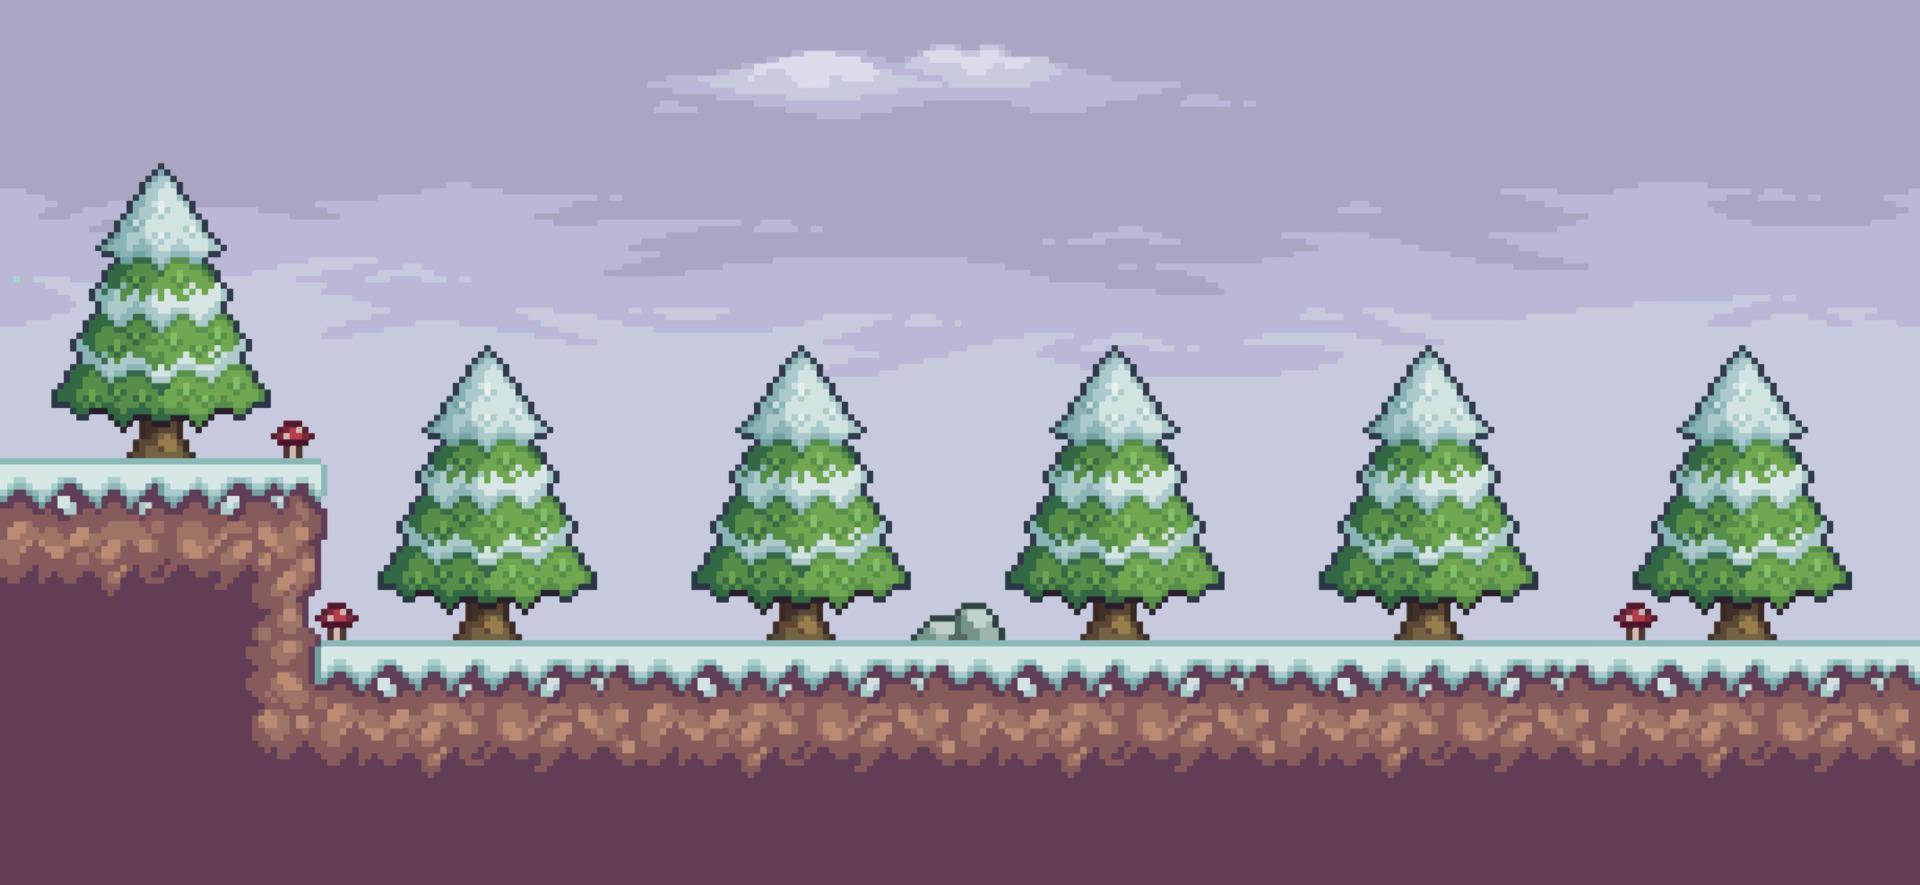 escena de juego de arte de píxeles en la nieve con pinos, nubes, fondo de 8 bits vector